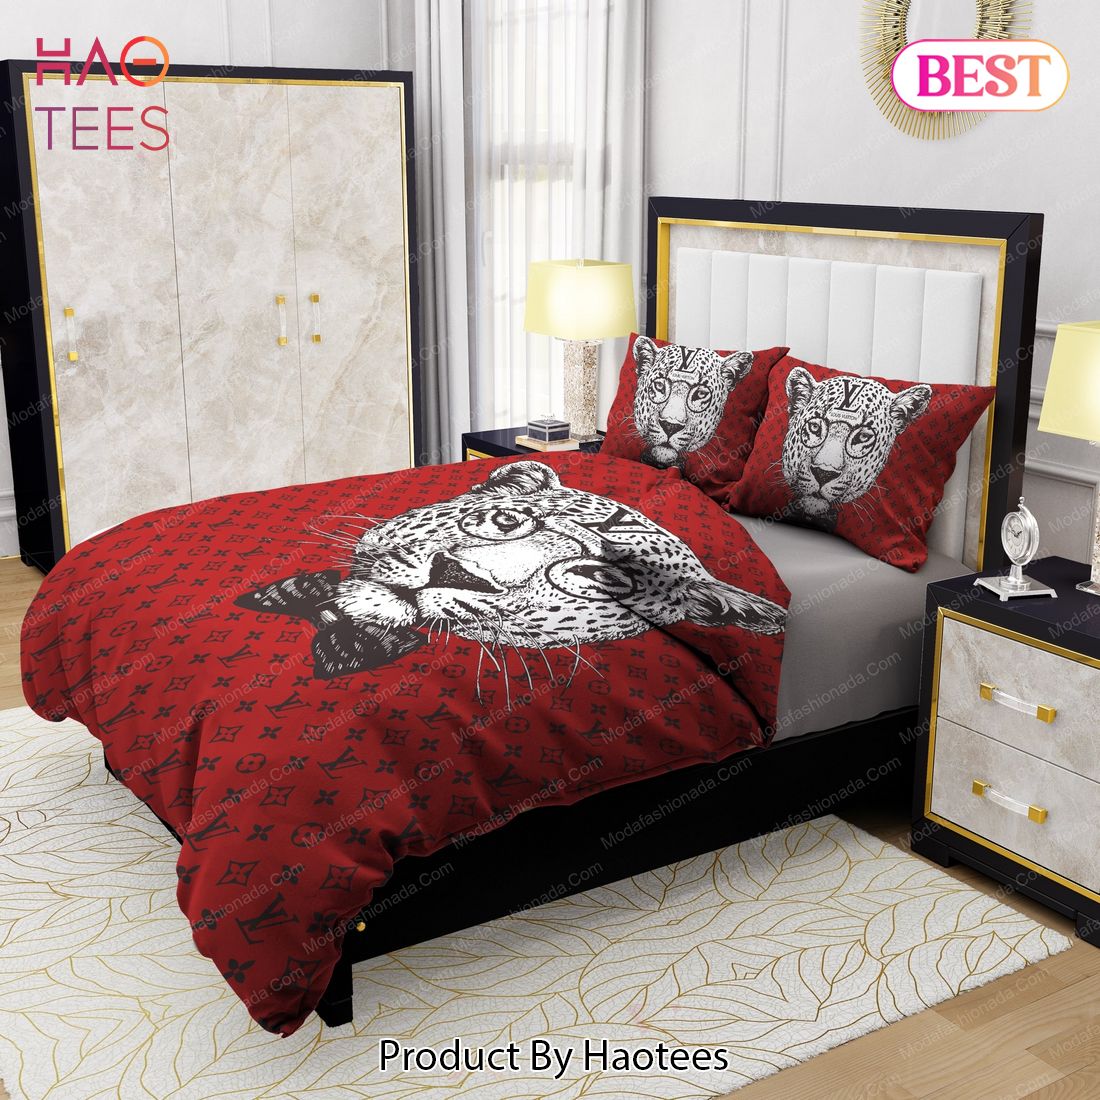 Buy Leopard Head Louis Vuitton Bedding Sets Bed Sets, Bedroom Sets, Comforter  Sets, Duvet Cover, Bedspread